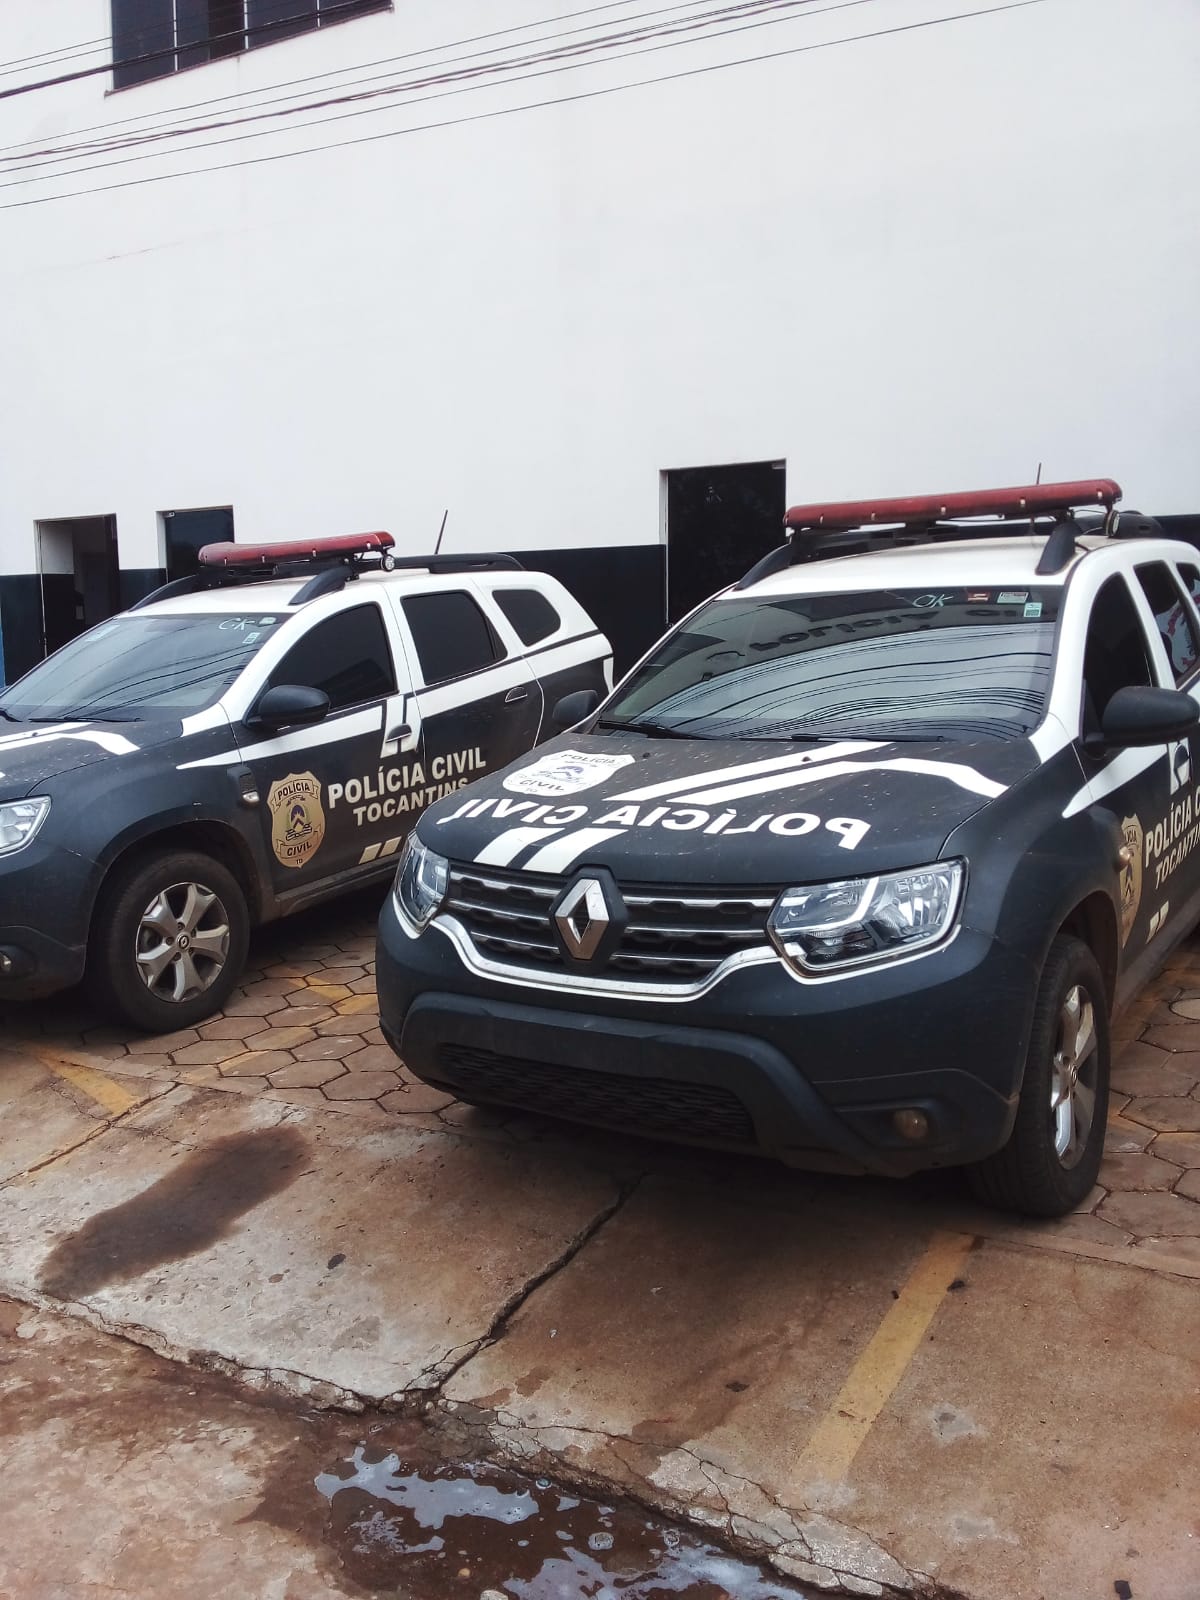 Em 24 horas, Polícia Civil conclui apuração sobre vídeo com fala racista em Paraíso do Tocantins